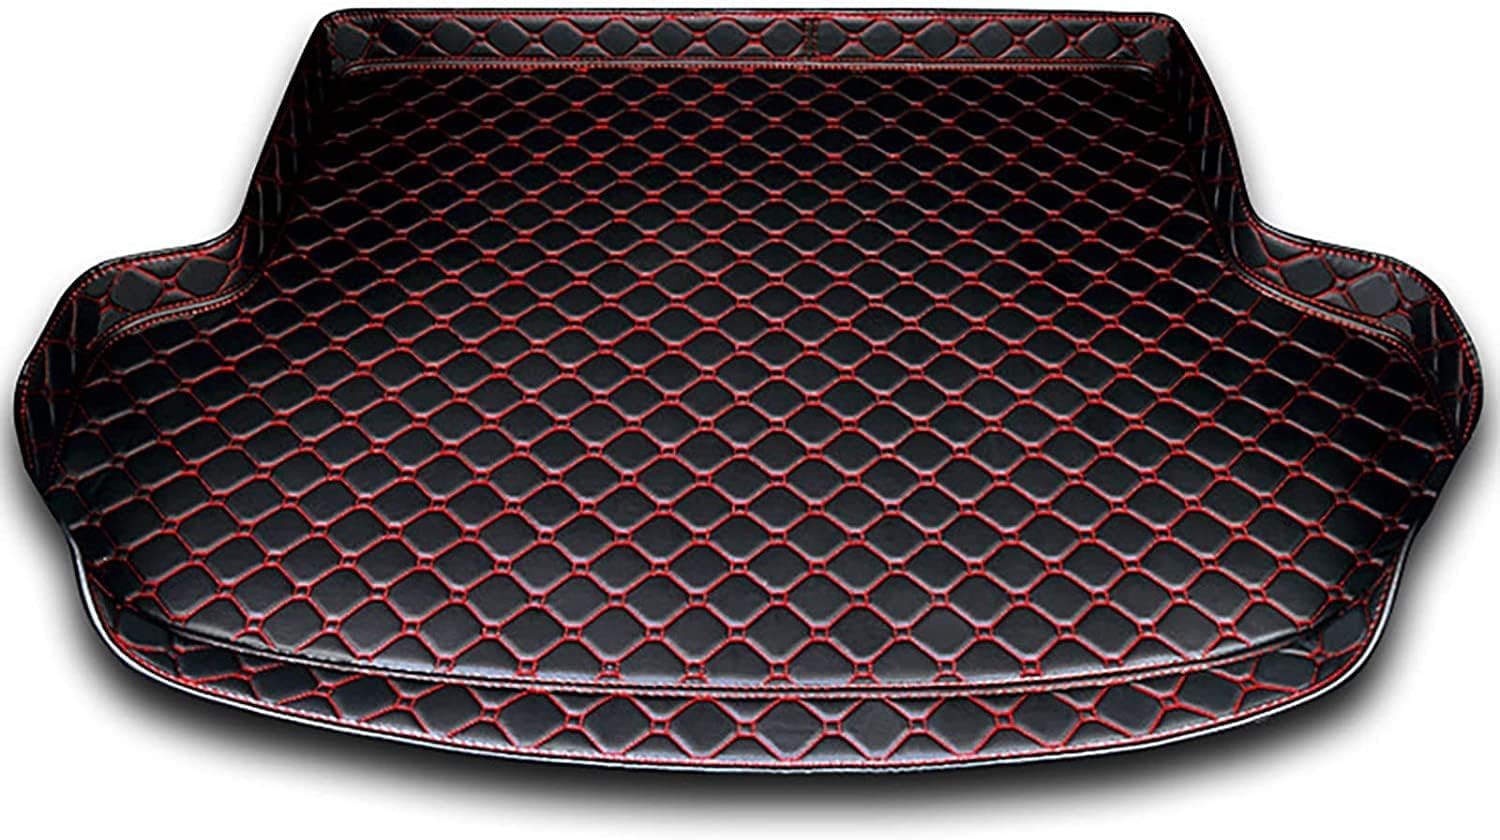 Auto Leder Kofferraummatten für FIAT 500/Abarth 500 2015-2020, Kofferraum Schutzmatte Kofferraumwanne Teppich rutschfest Staubdicht ZubehöR,C-Black Red von TONFON